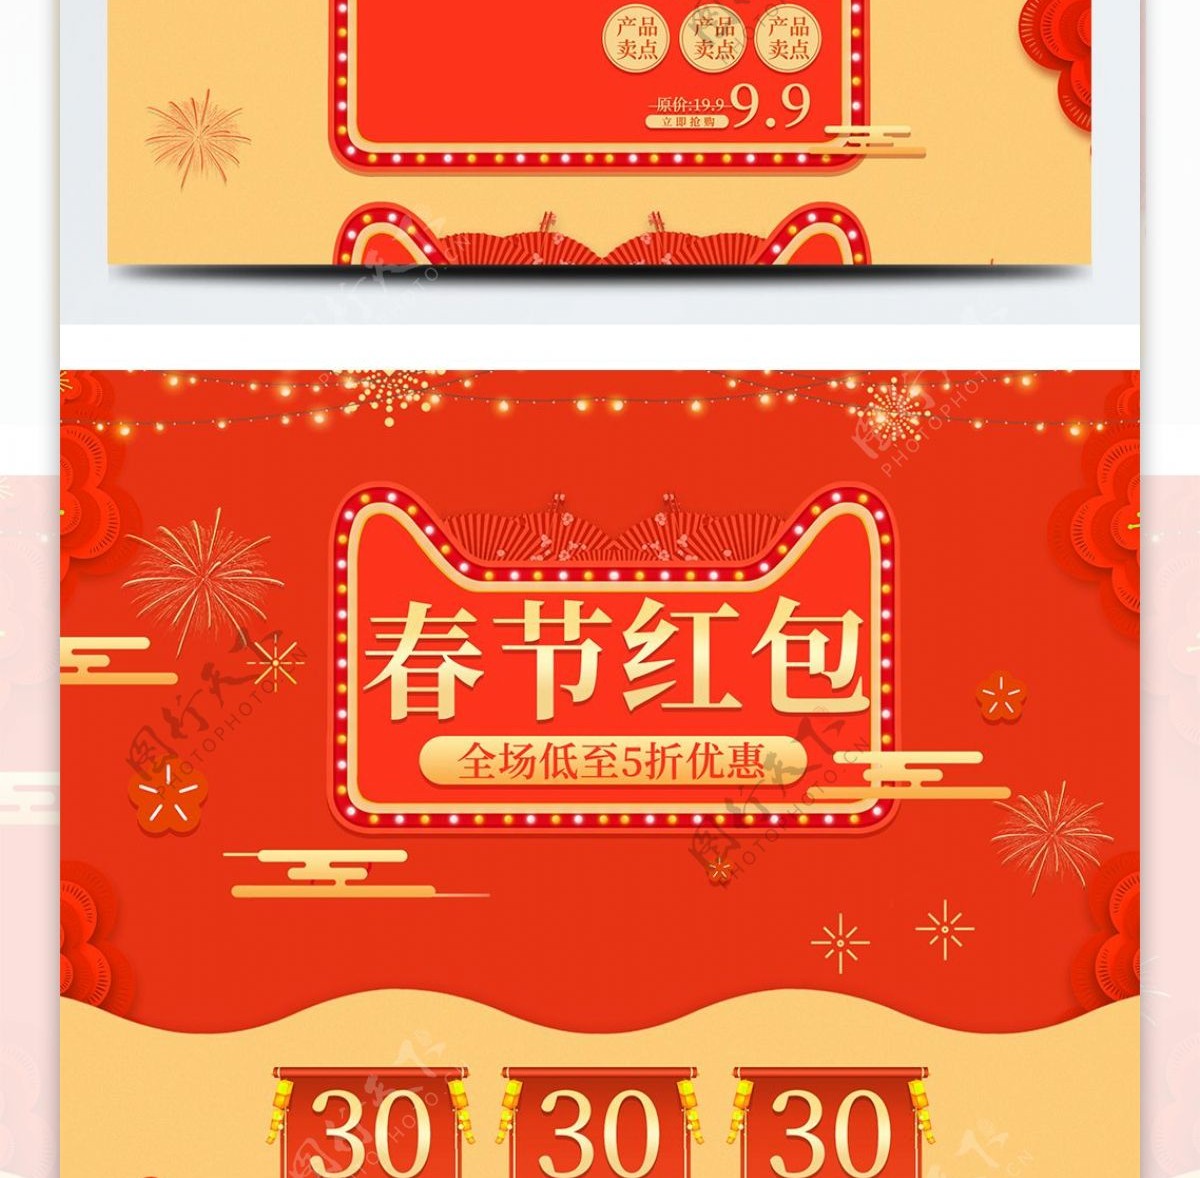 珊瑚红橘红新年春节红包优惠活动促销模板